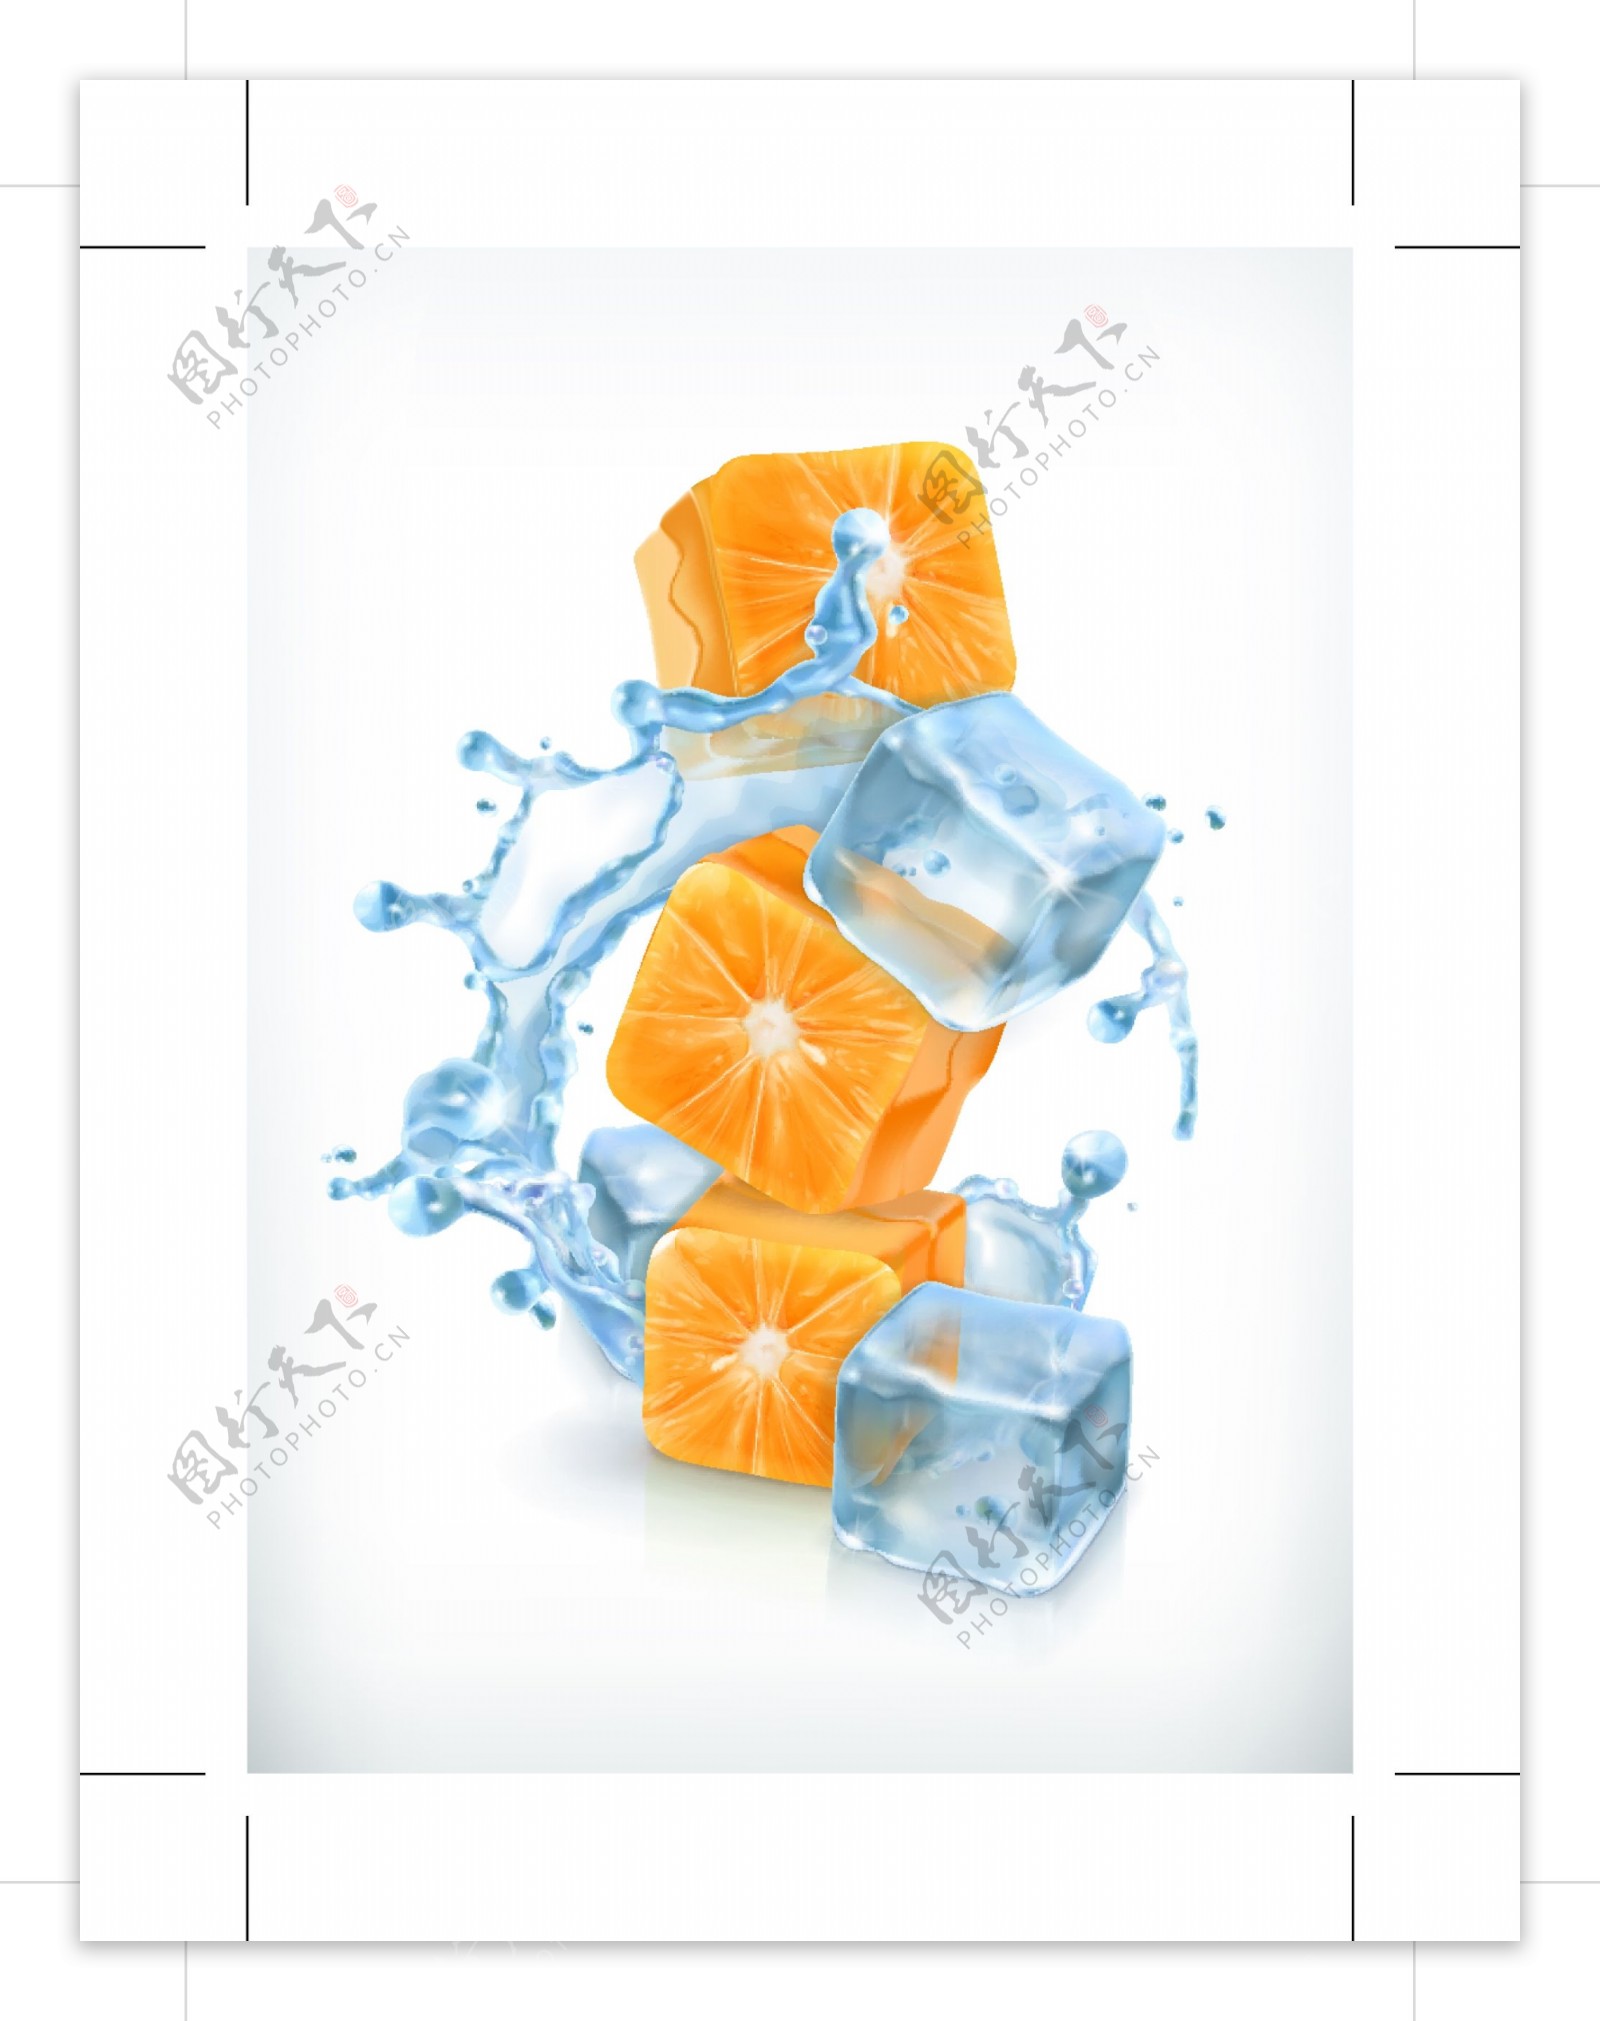 橙子与冰块矢量素材